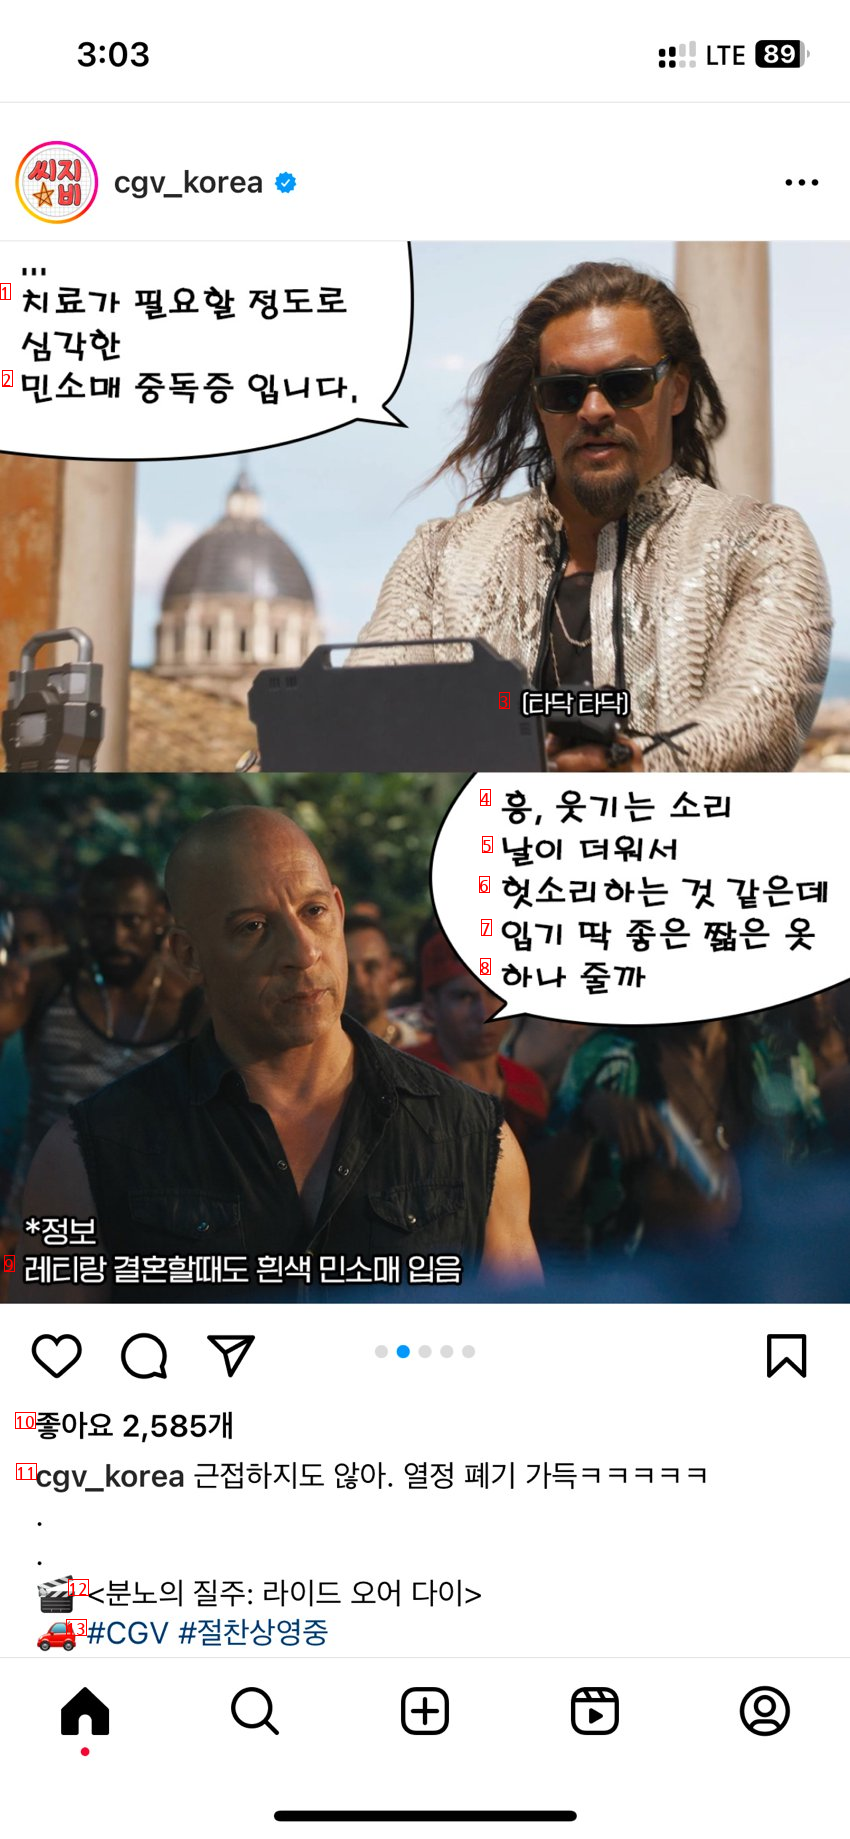 공식 CGV 분노의 질주 홍보 인스타